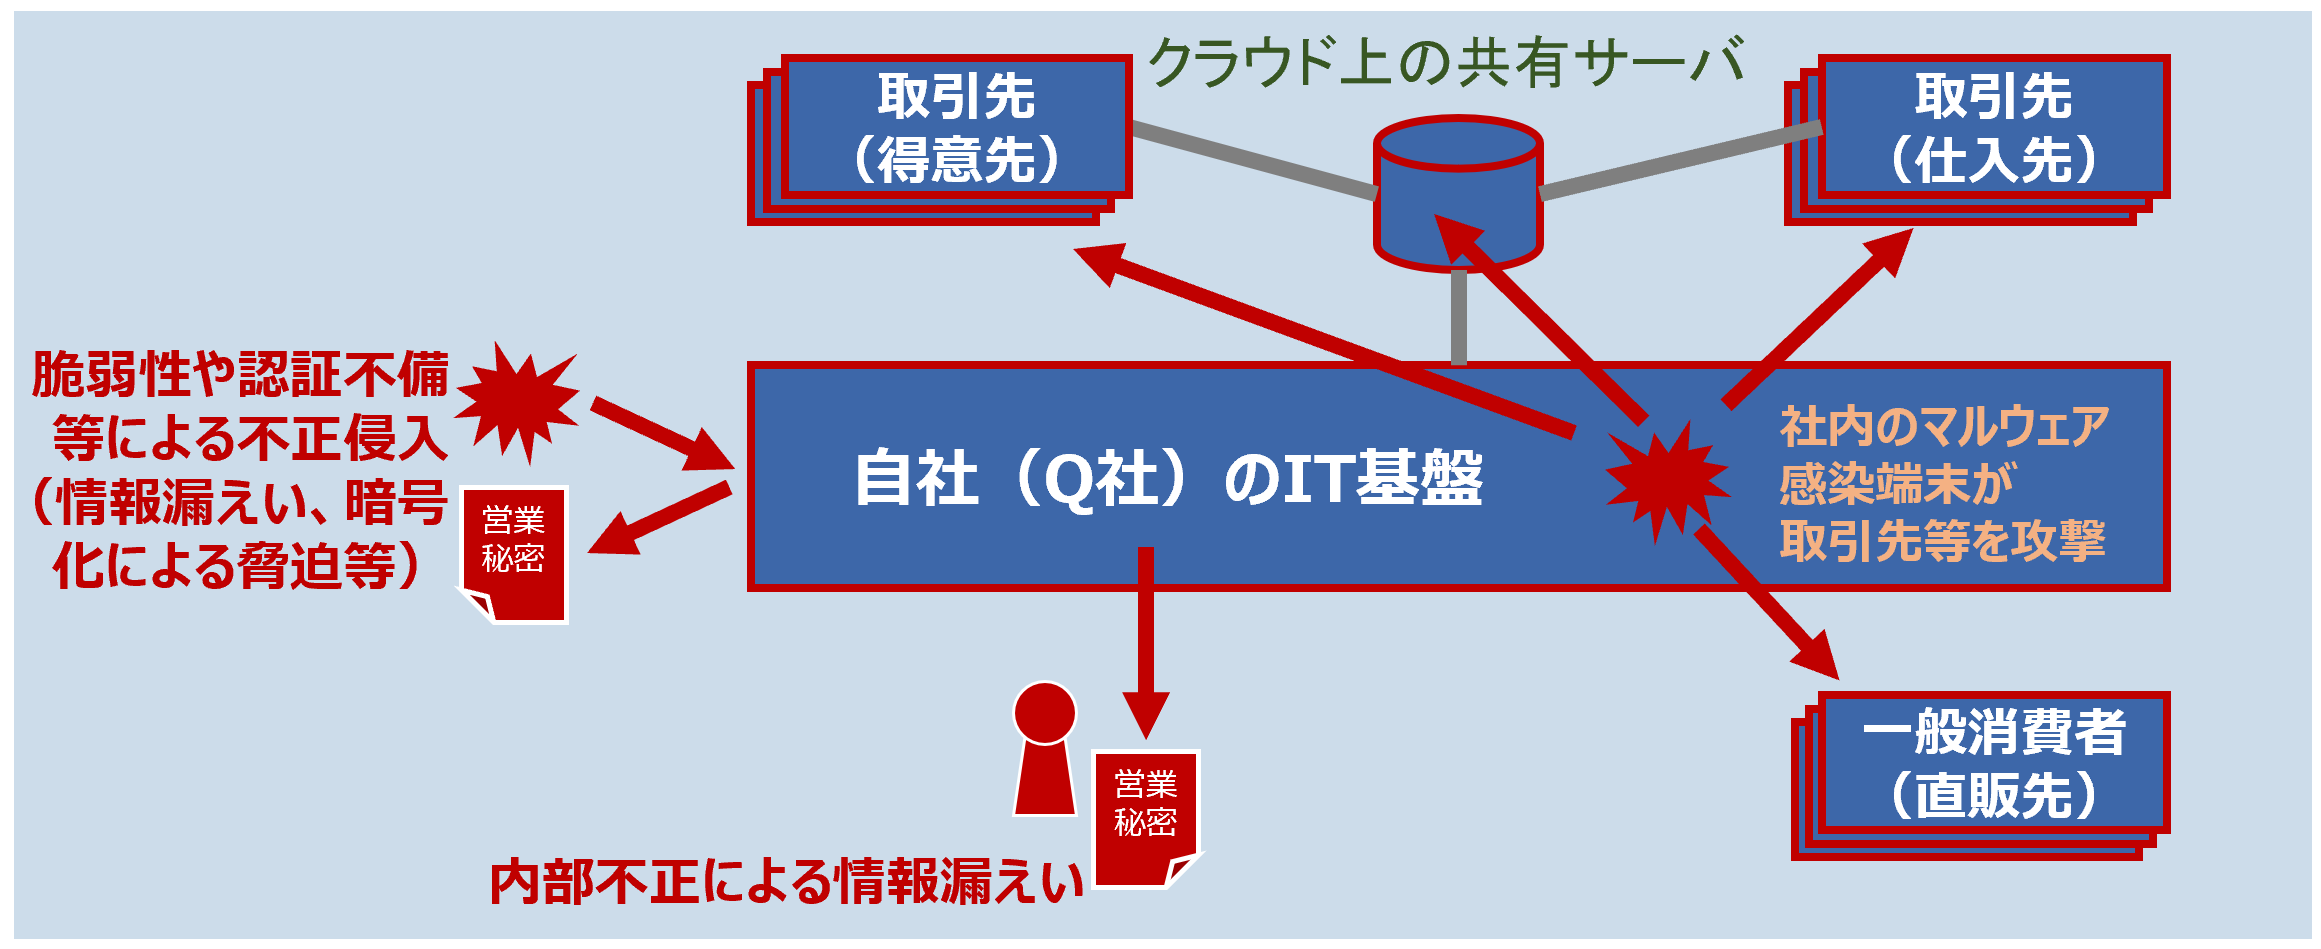 Q社でインシデントが発生した場合の影響範囲のイメージ（赤色部分）